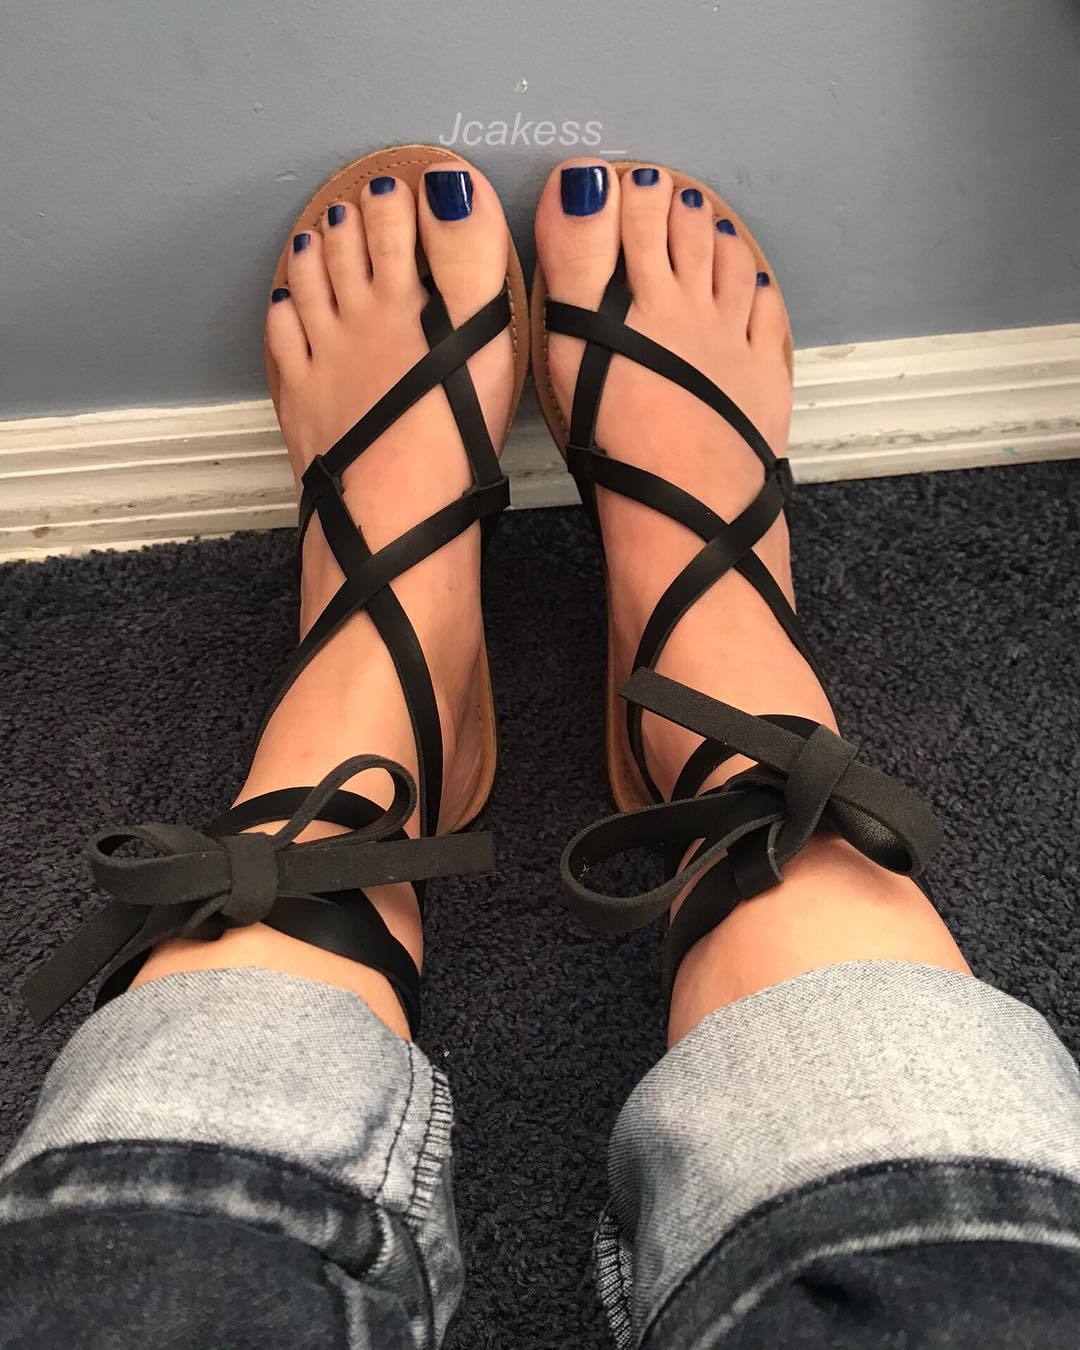 Jenelle Jcakess's Feet